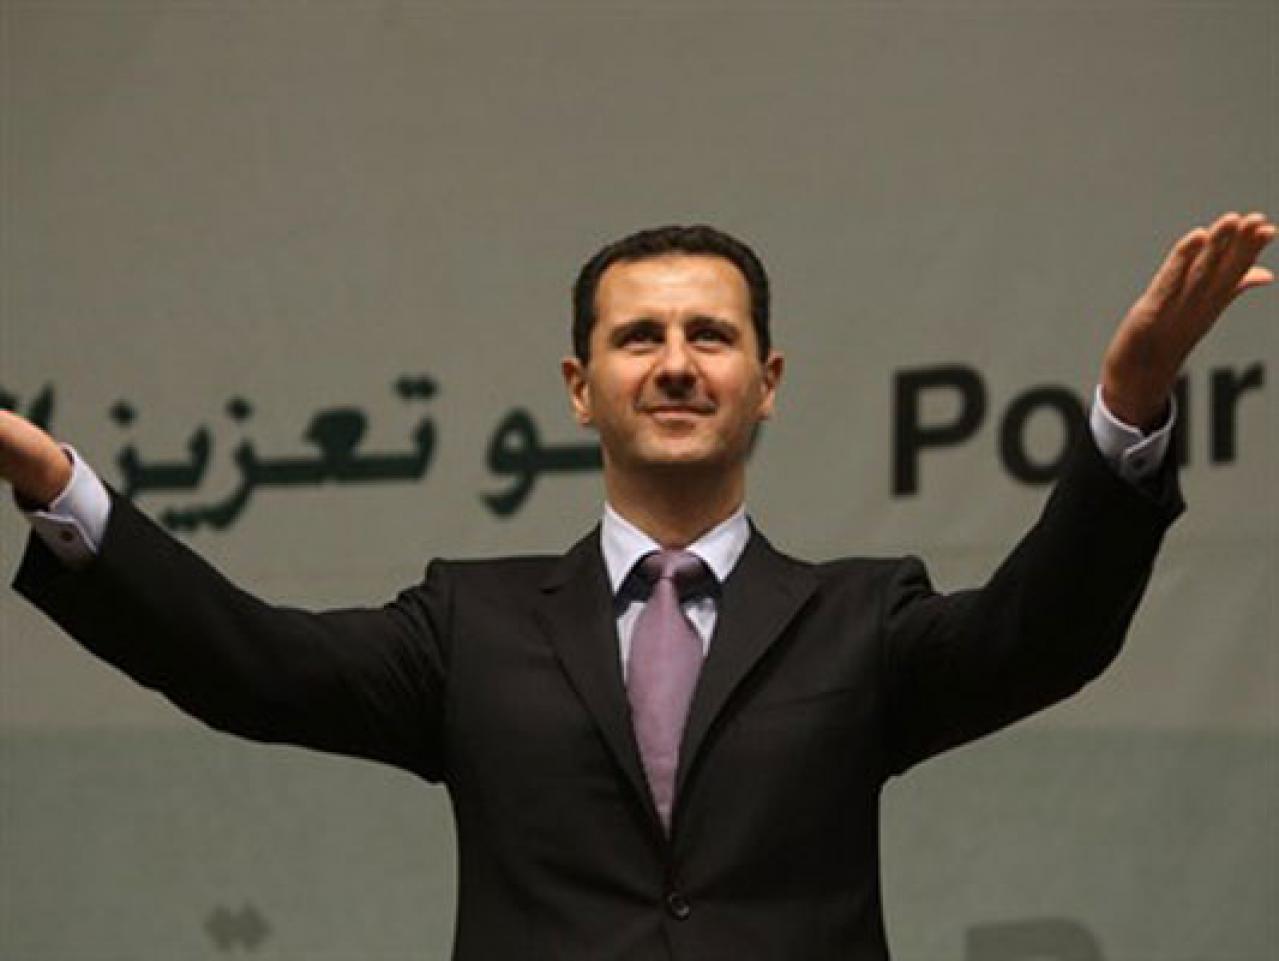 Sirijci izlaze na predsjedničke izbore na kojima će pobijediti Asad